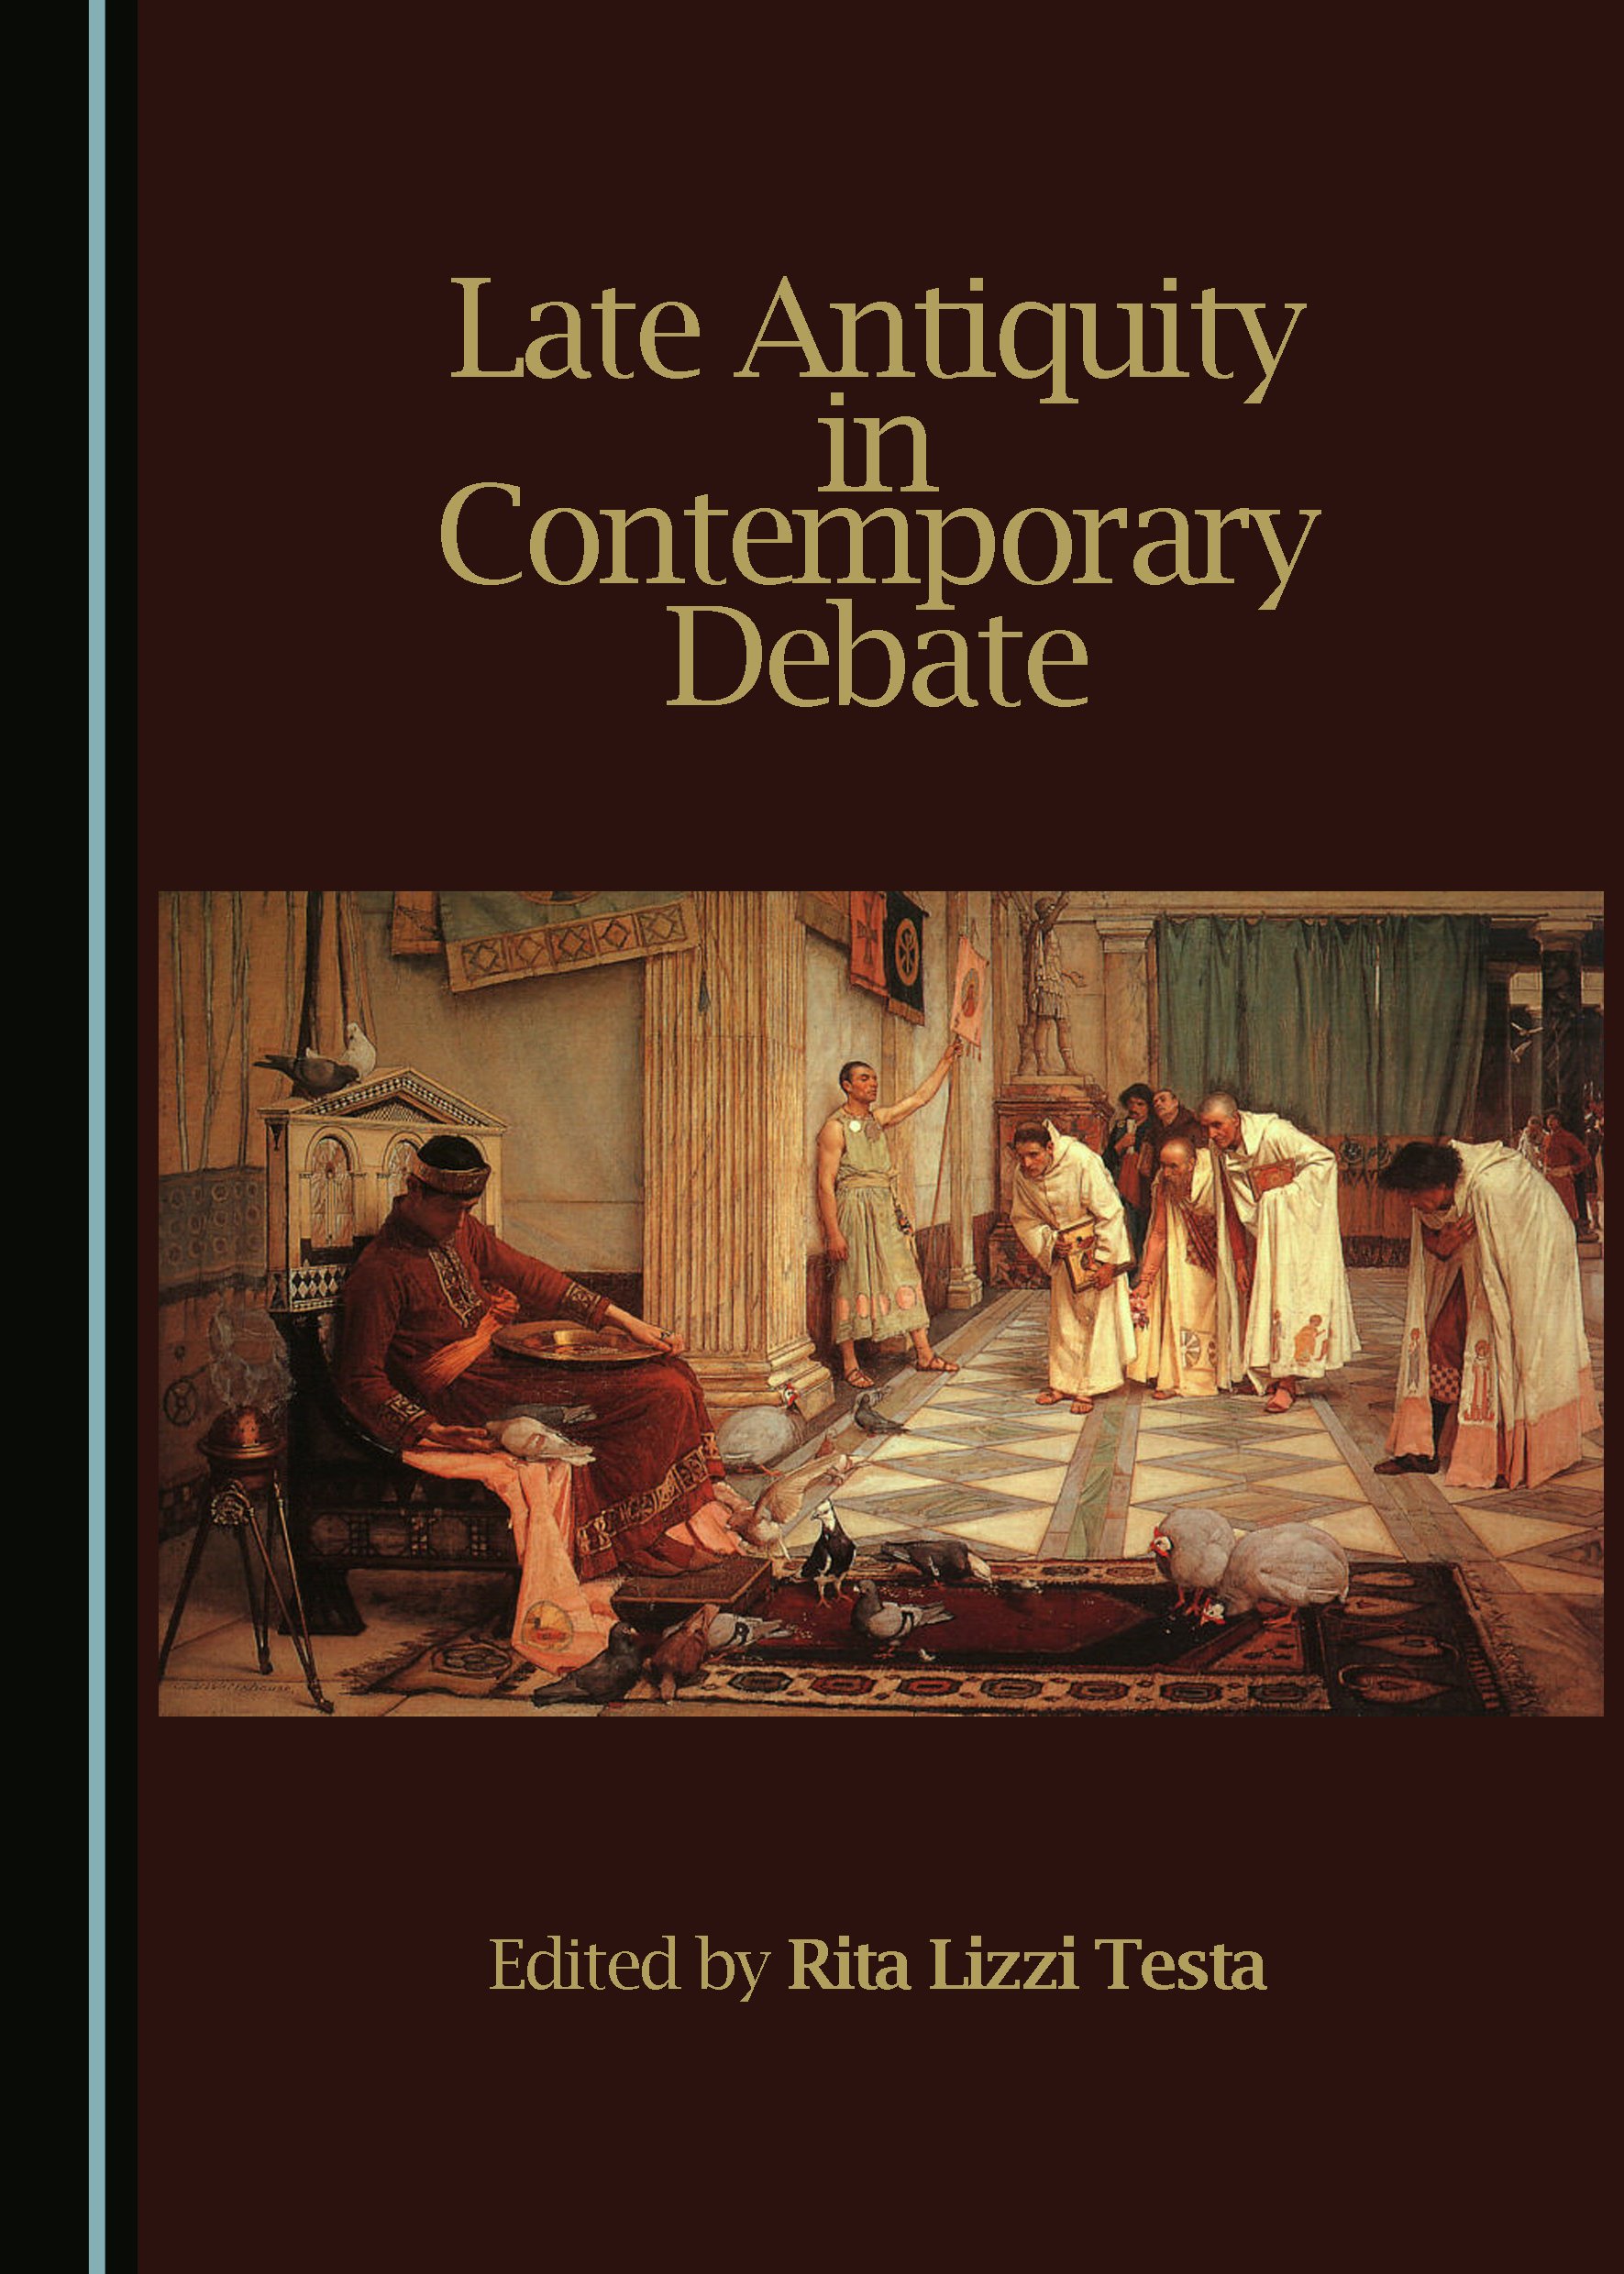 Imagen de portada del libro Late antiquity in contemporary debate